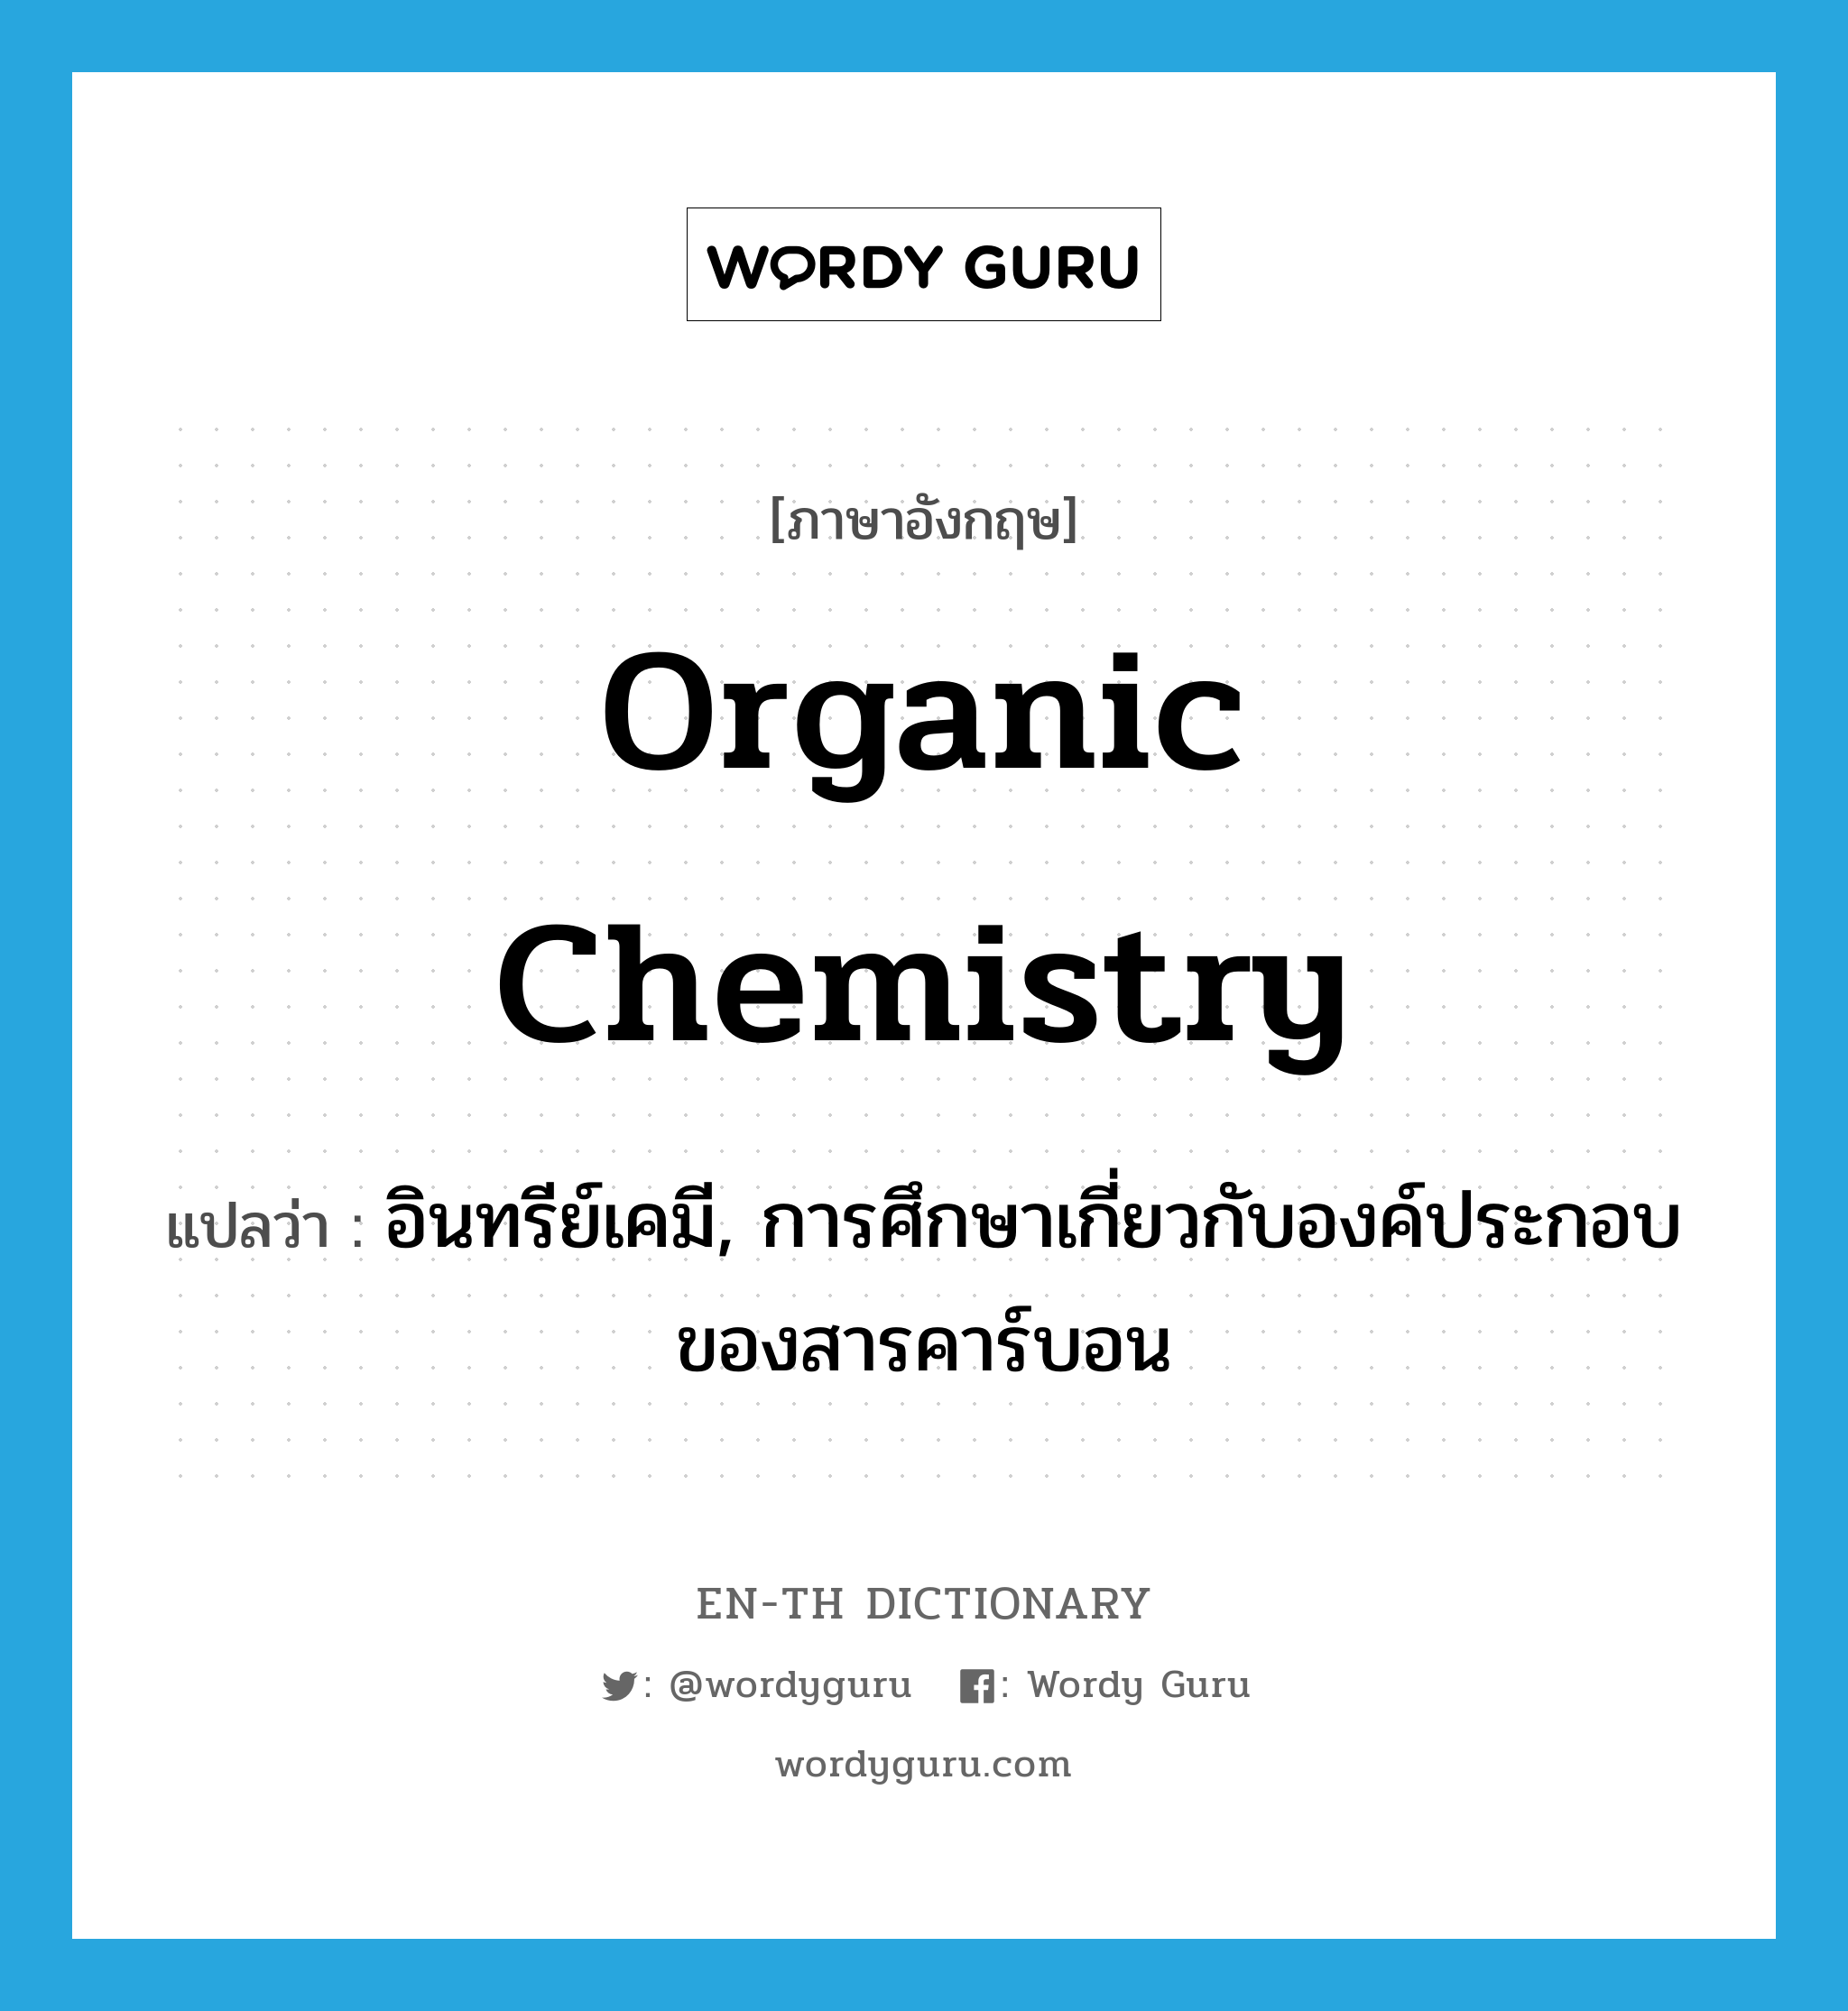 organic chemistry แปลว่า?, คำศัพท์ภาษาอังกฤษ organic chemistry แปลว่า อินทรีย์เคมี, การศึกษาเกี่ยวกับองค์ประกอบของสารคาร์บอน ประเภท N หมวด N